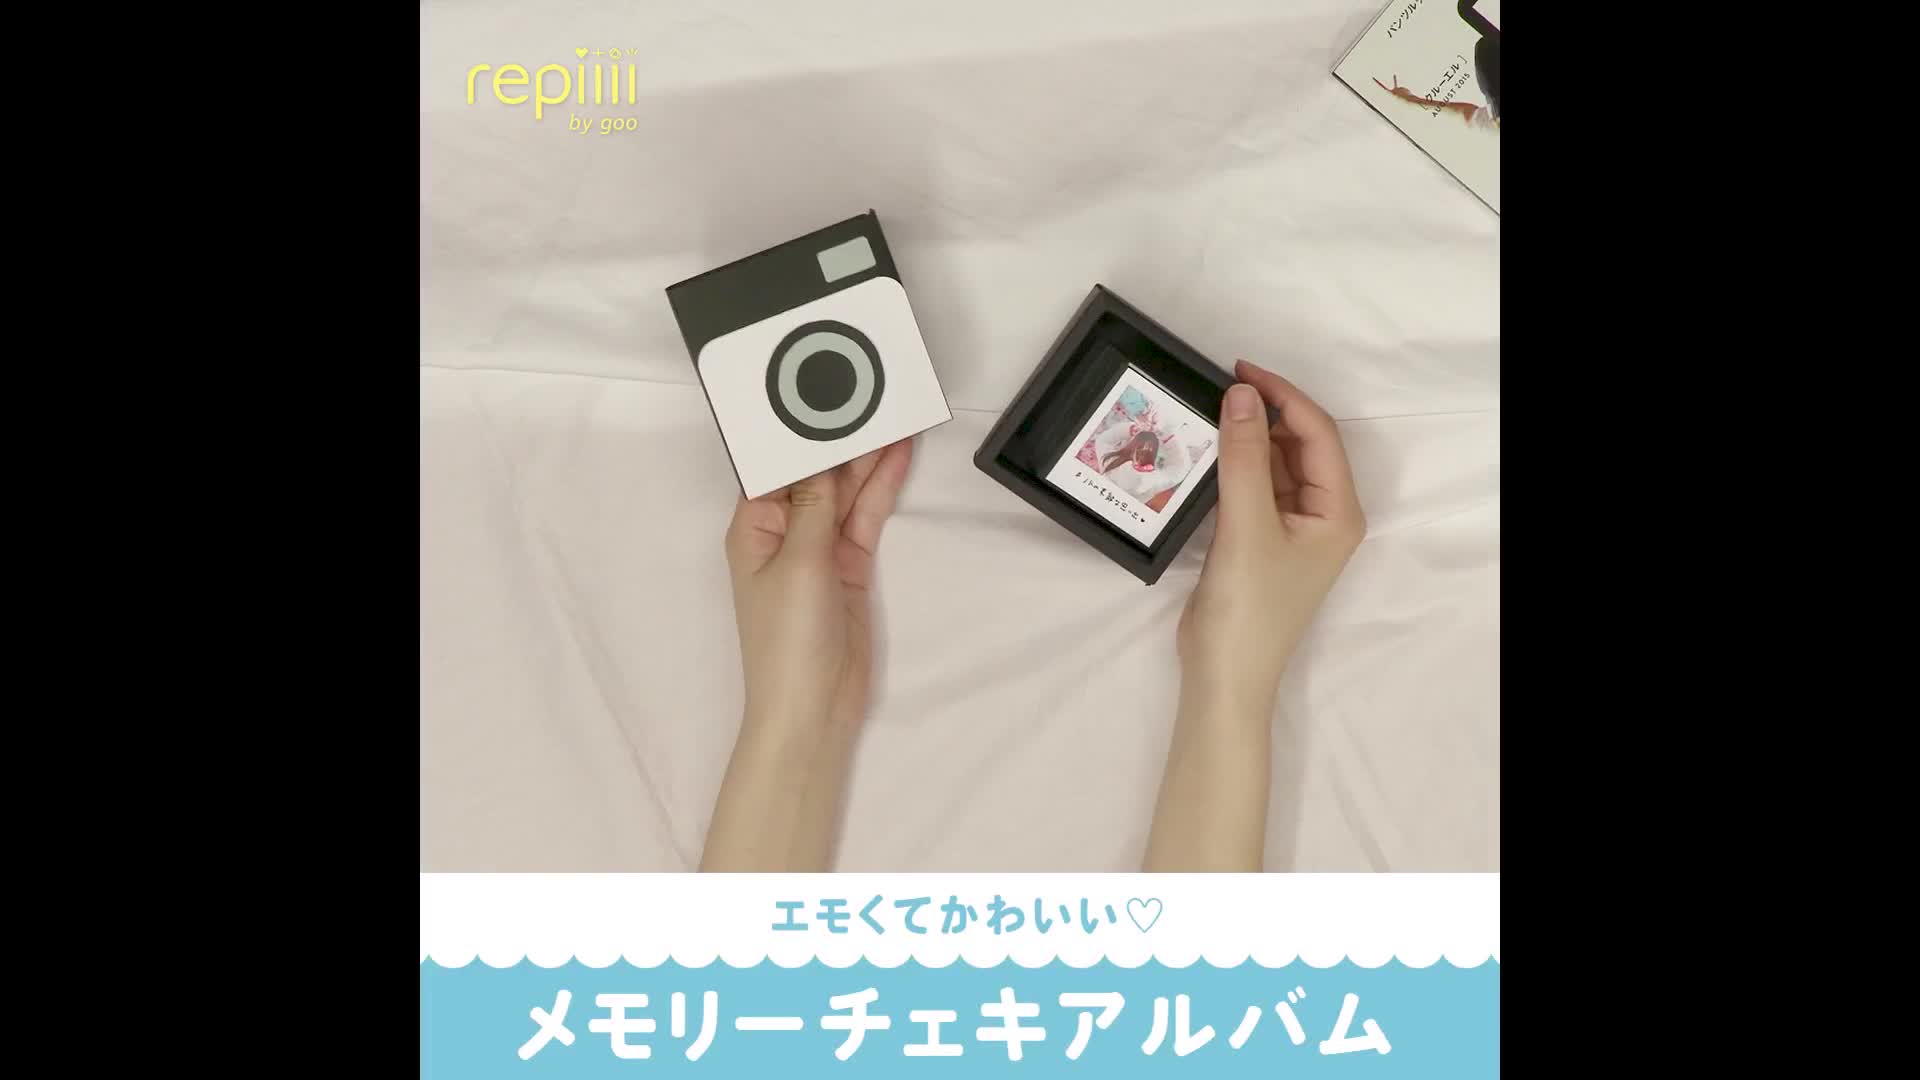 エモくてかわいい メモリーチェキアルバム Repiiii By Goo レピー Yahoo Japan